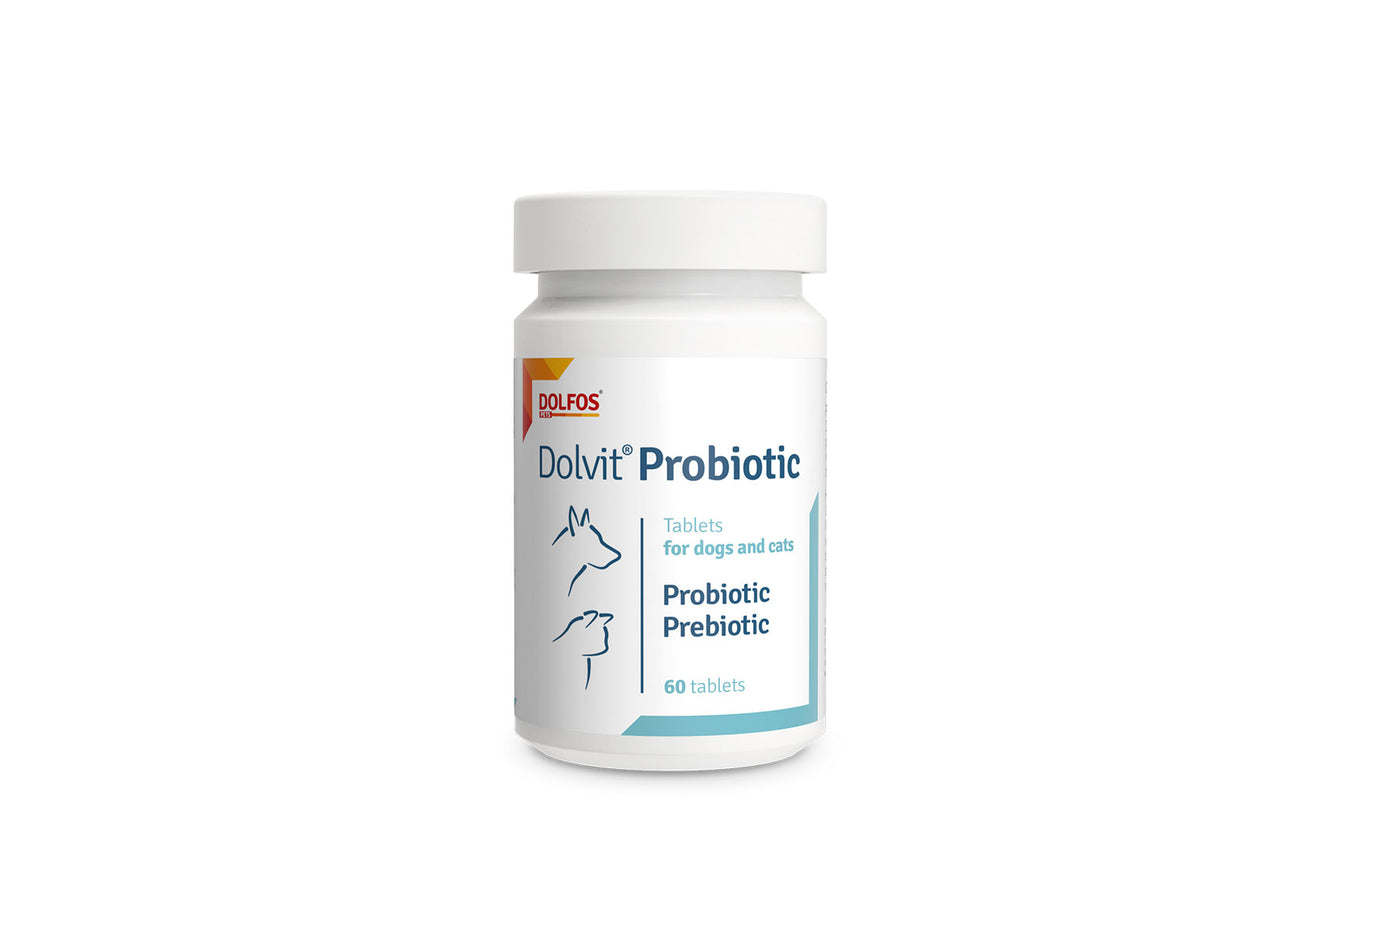 Dolfos Probiotic bote 60 comprimidos probióticos y prebióticos